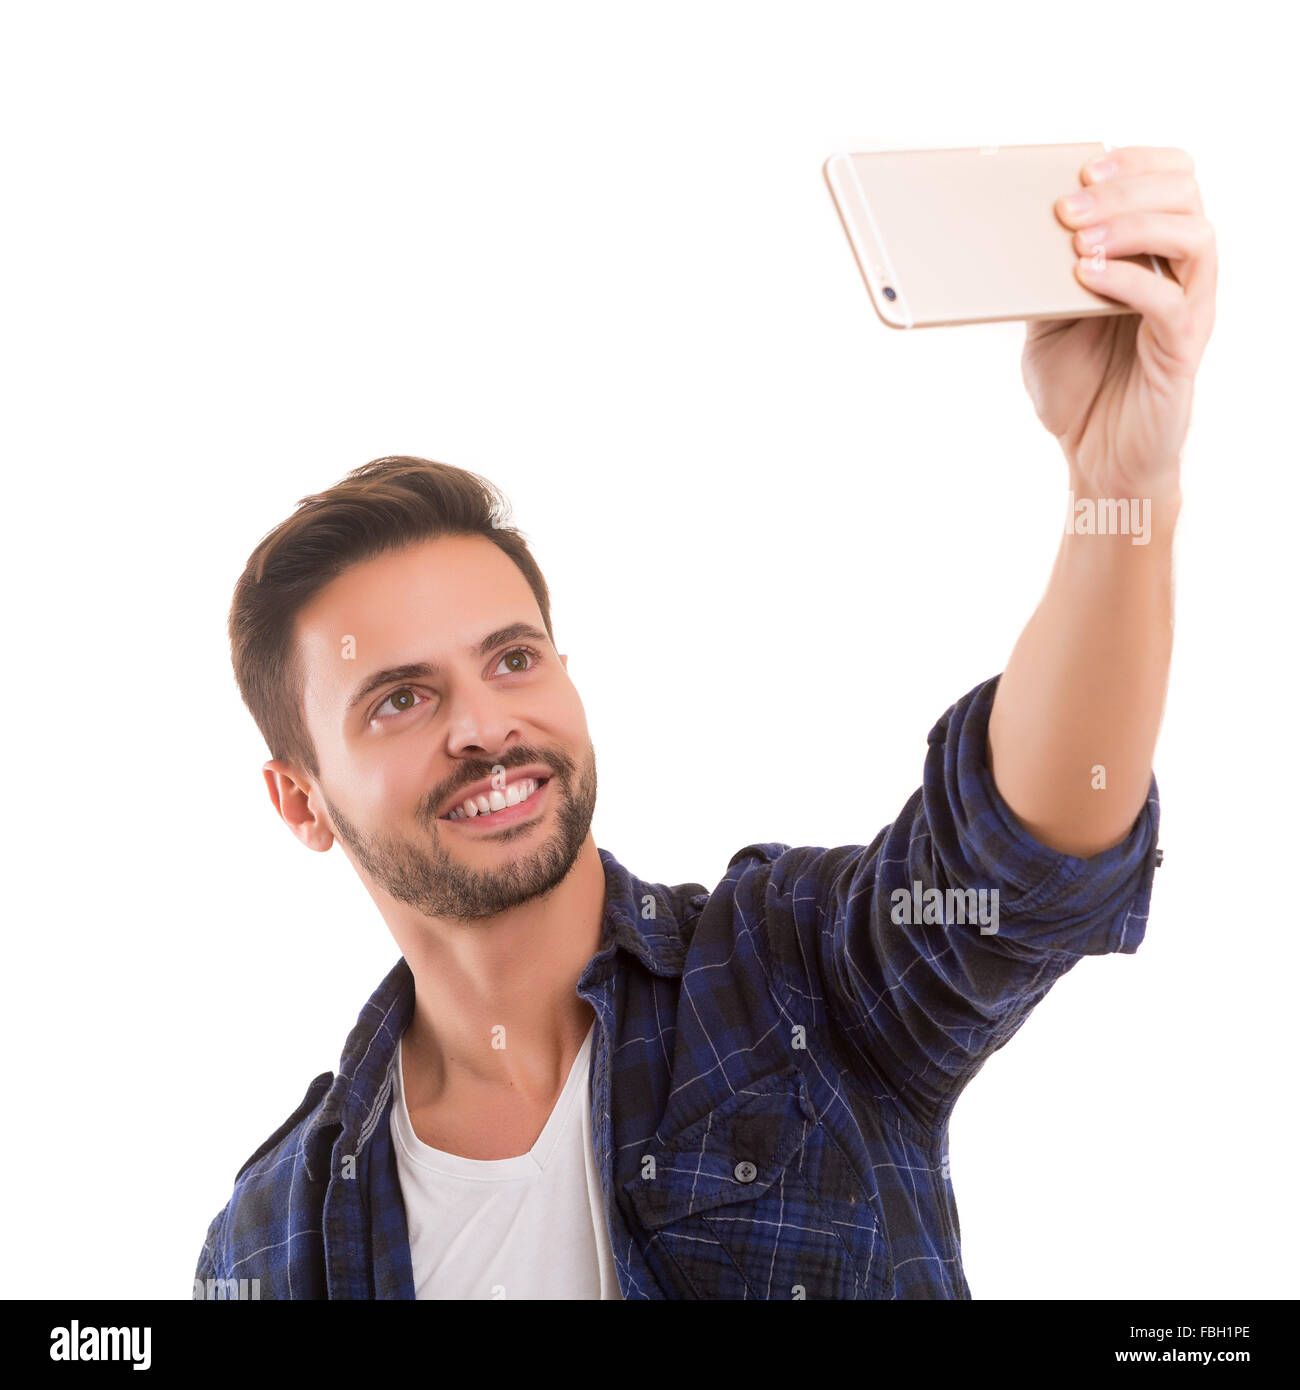 Glücklich Jüngling unter Selbstporträt Fotografie durch Smartphone auf weißem Hintergrund. Stockfoto